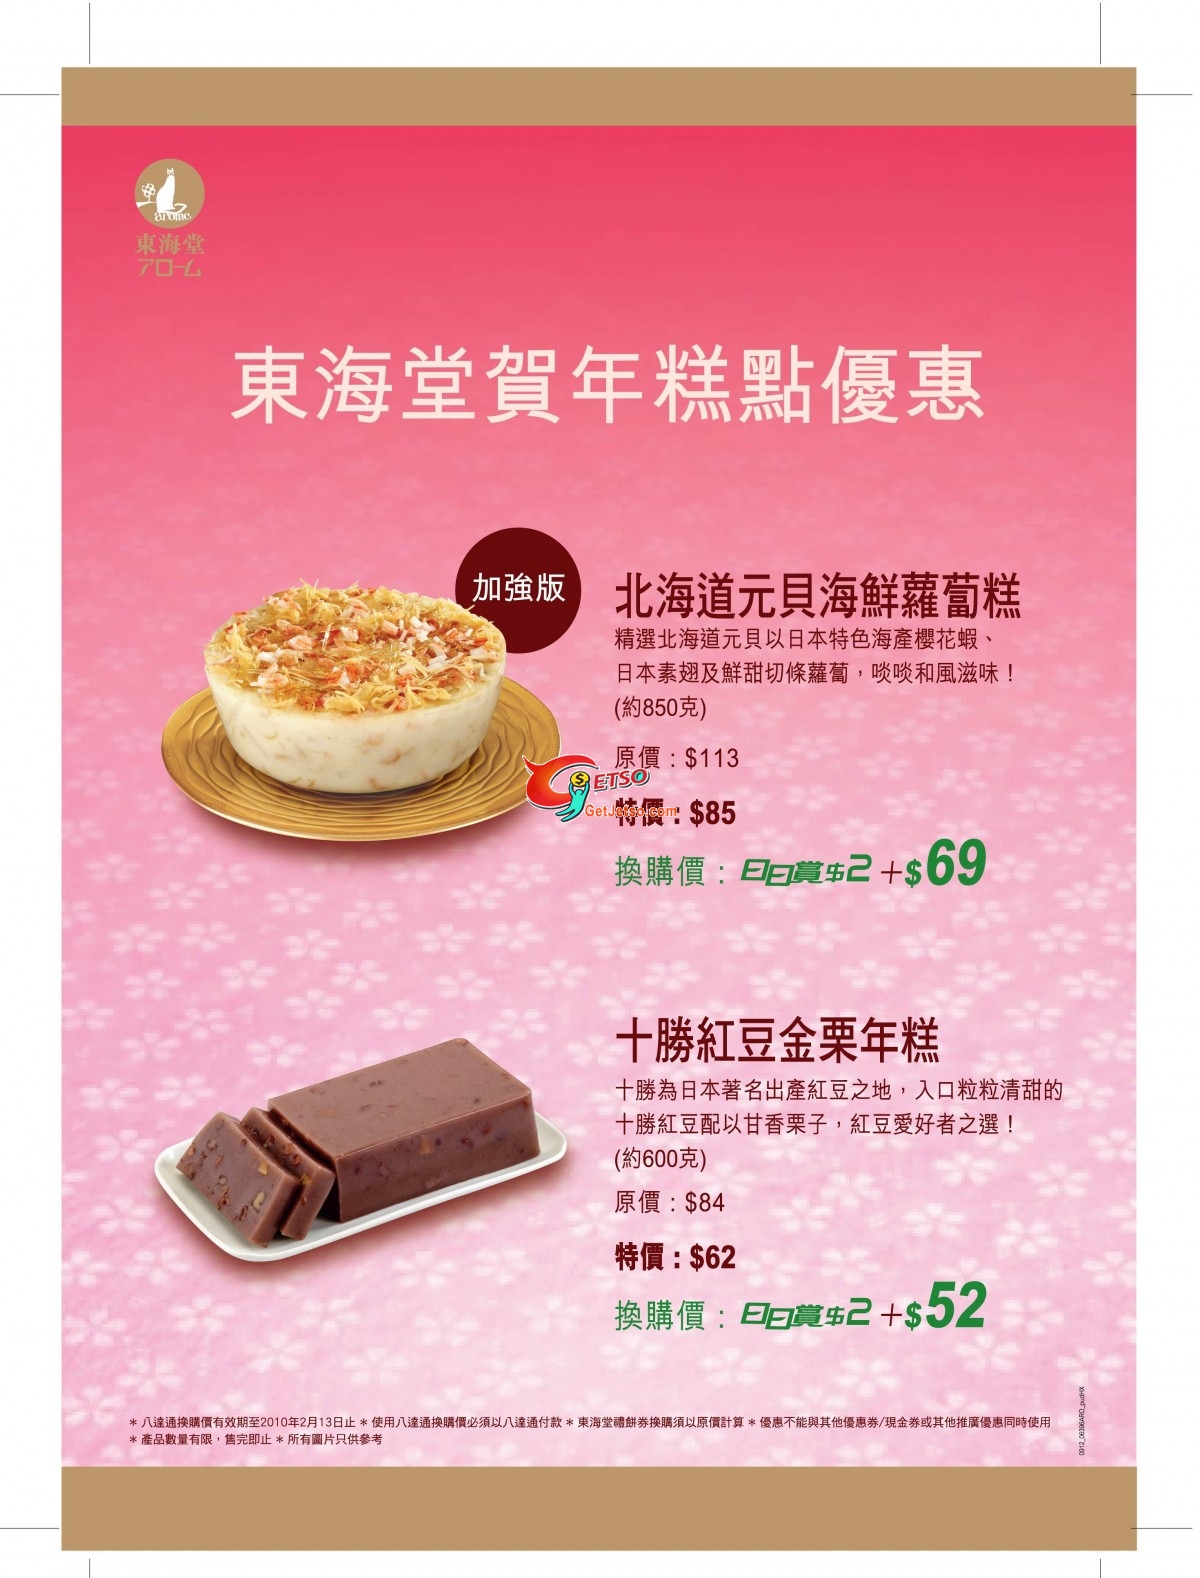 東海堂新年食品優惠(至2月13日)圖片1